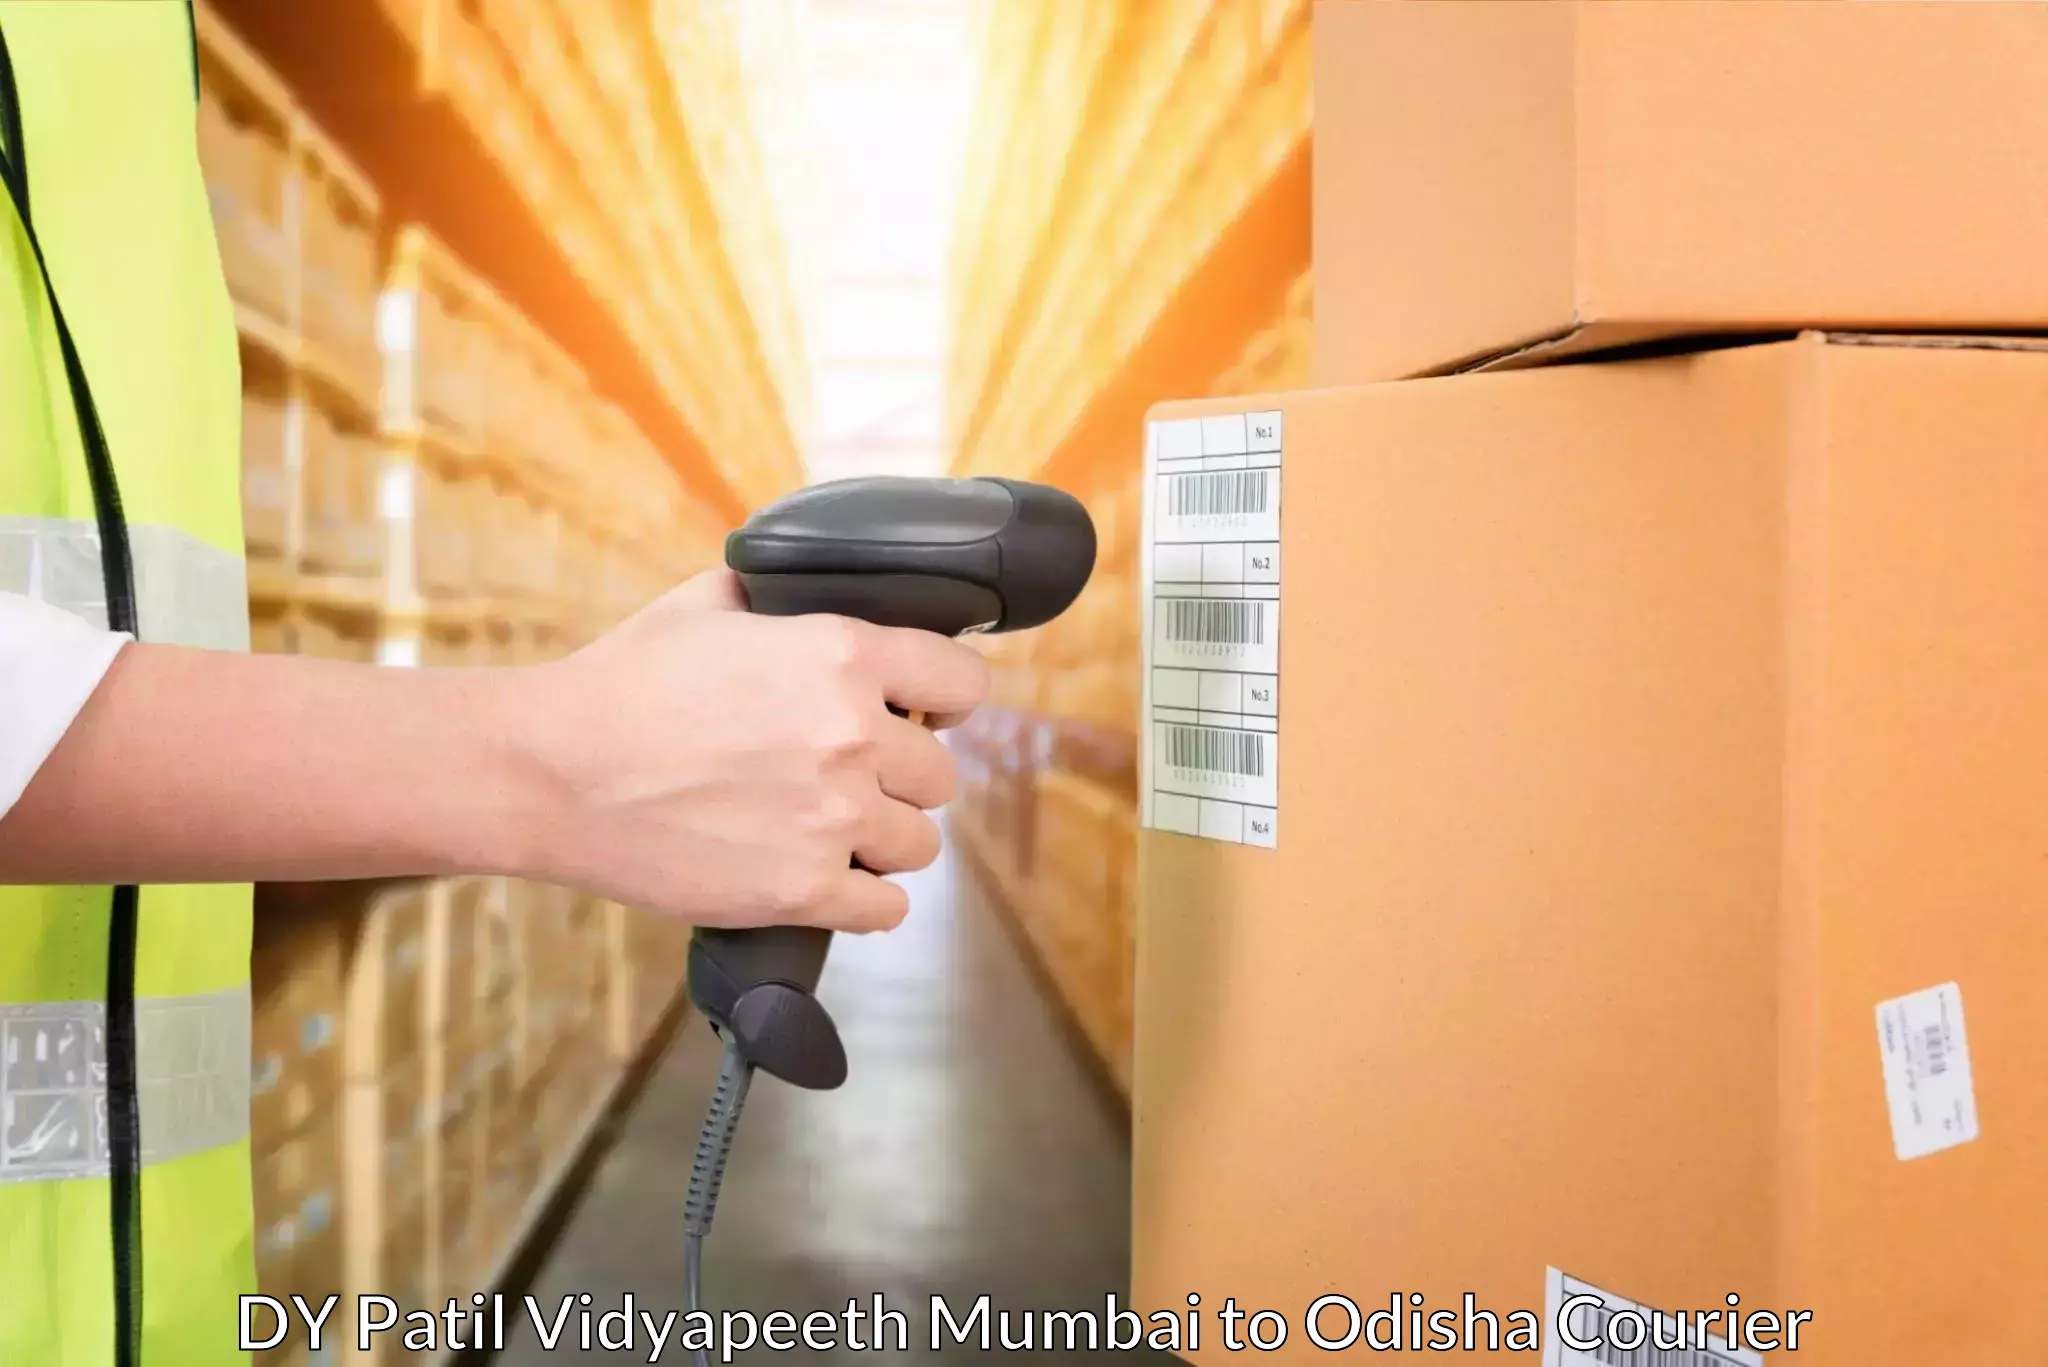 Digital courier platforms DY Patil Vidyapeeth Mumbai to Sundergarh